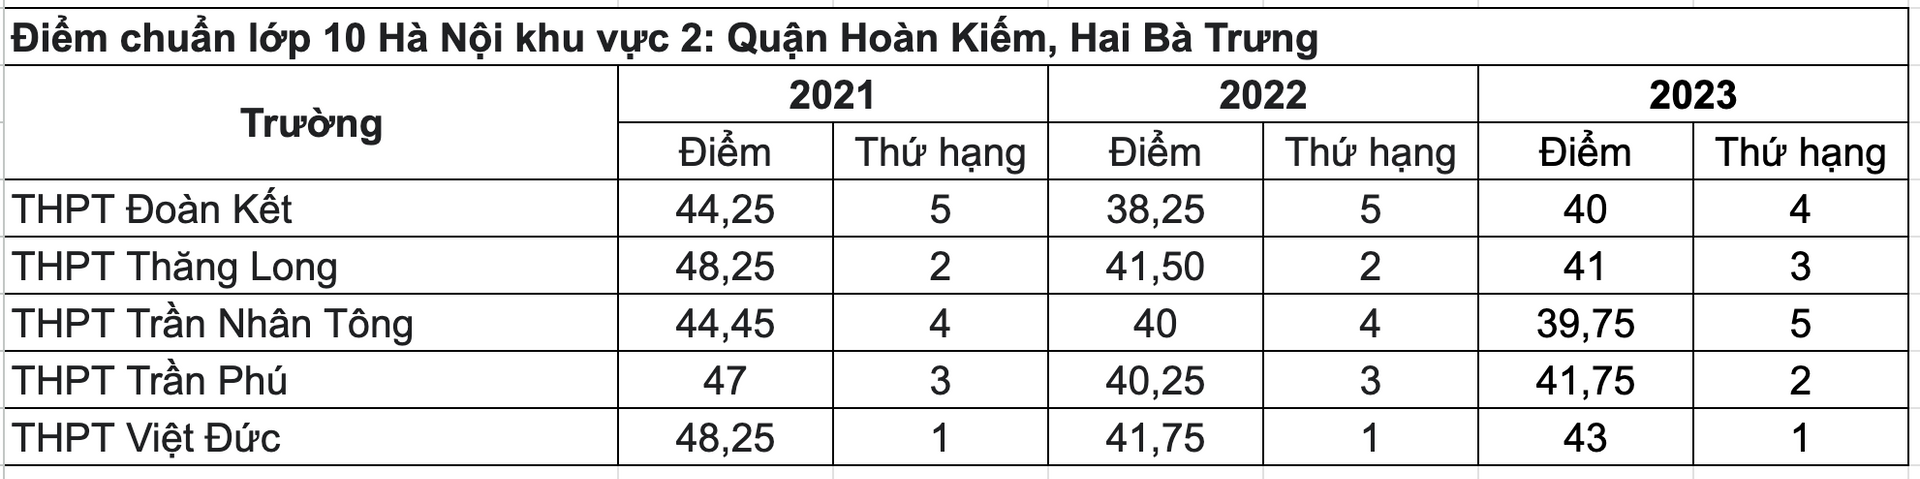 Điểm chuẩn TUYỂN SINH LỚP 10 THPT của các trường của Hà Nội 3 năm gần đây- Ảnh 5.